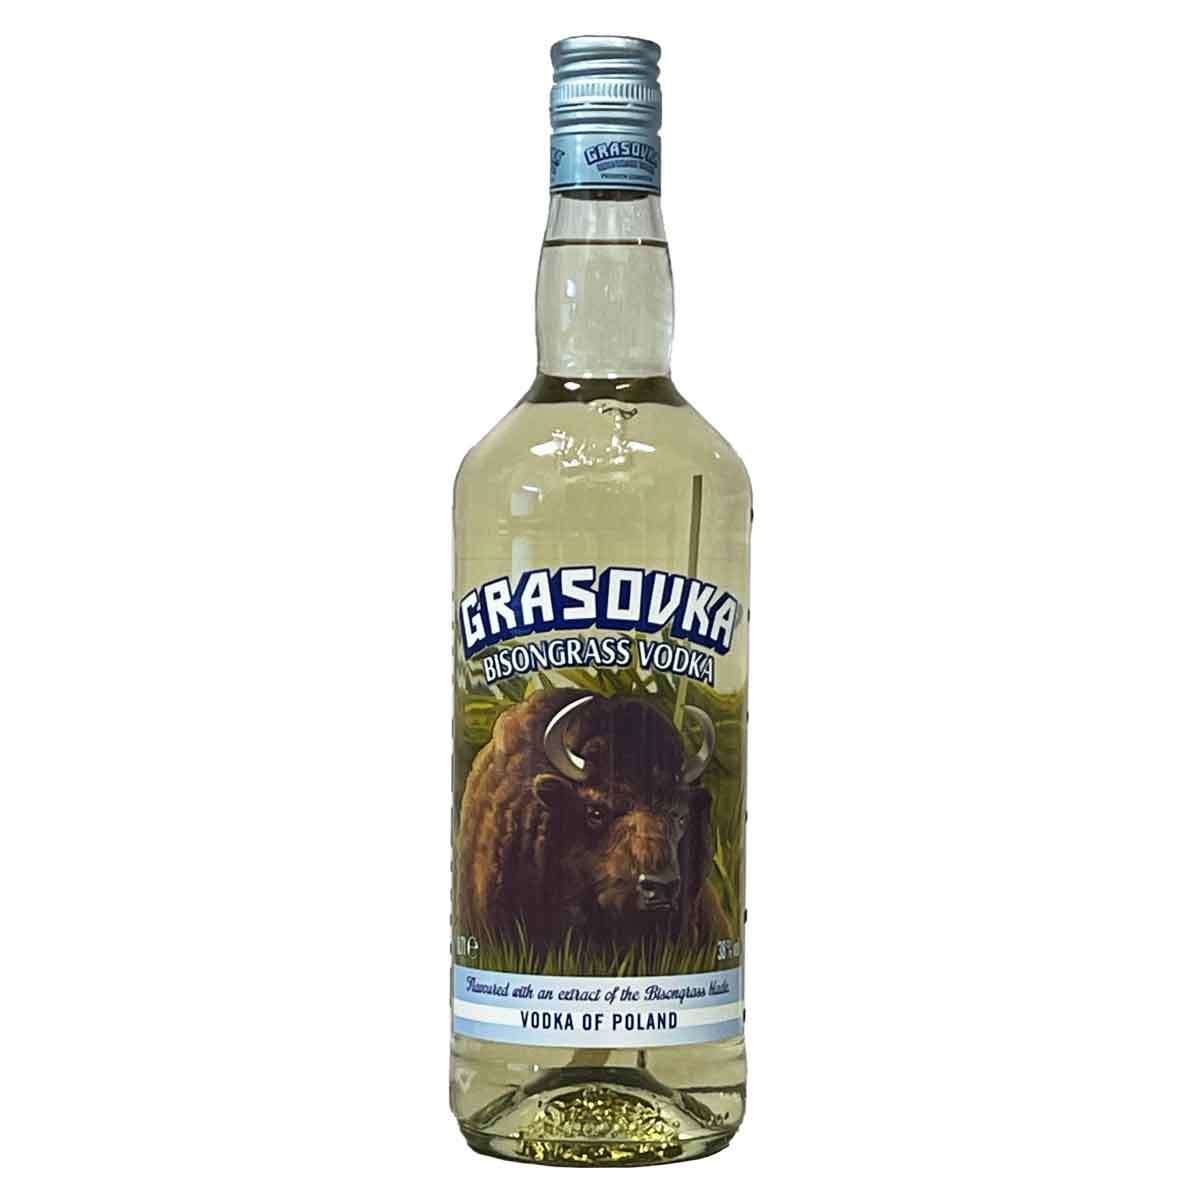 Grasovka Bisongrass Vodka 38% (0,7l) | Viel-Durst | Vodka